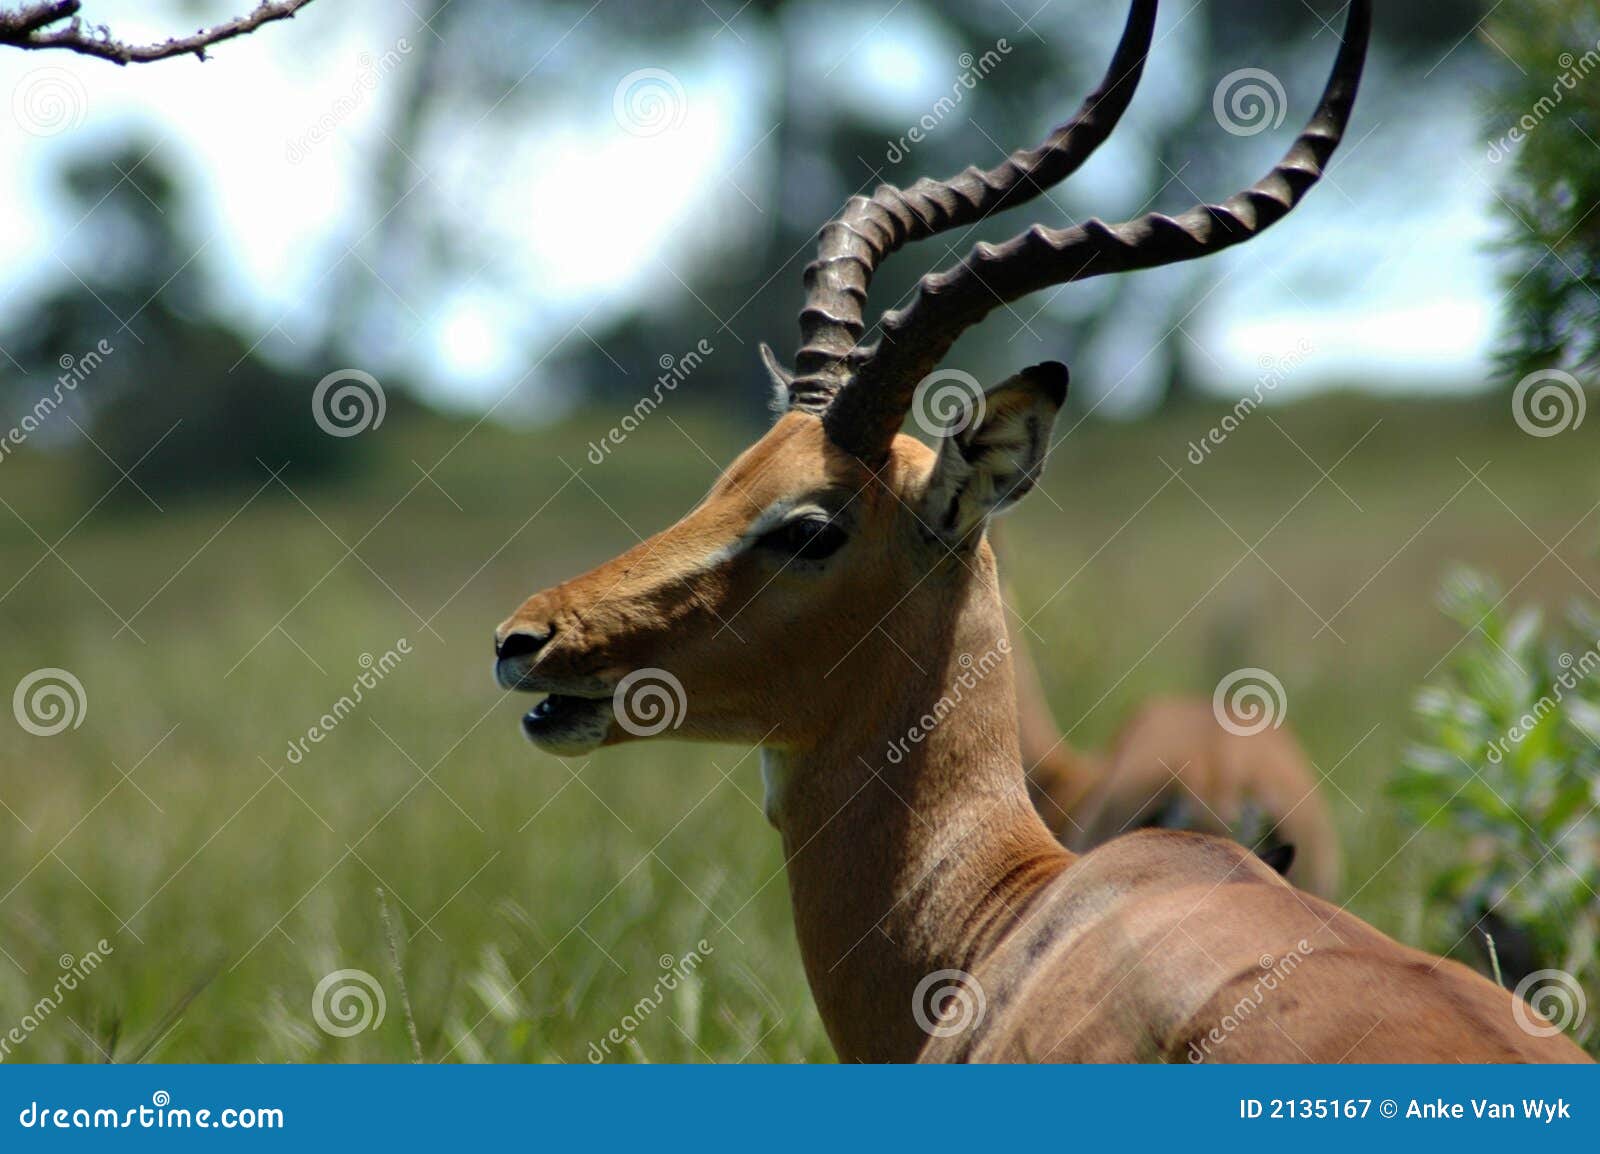 Fotos de antilopes africanos